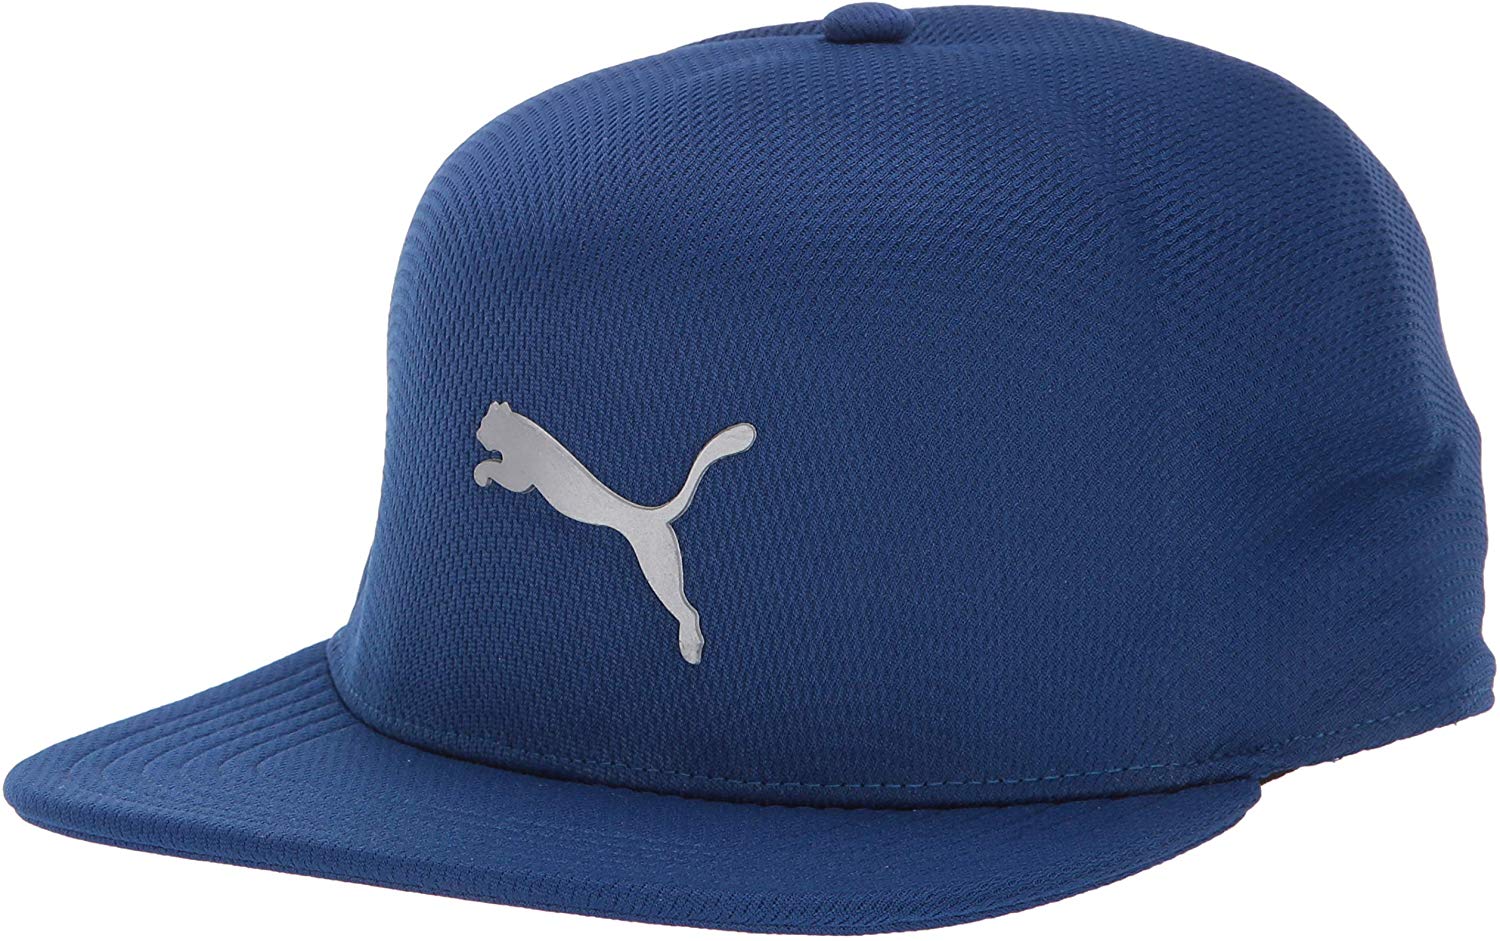 Puma Mens 2018 Evoknit Pro Golf Hats